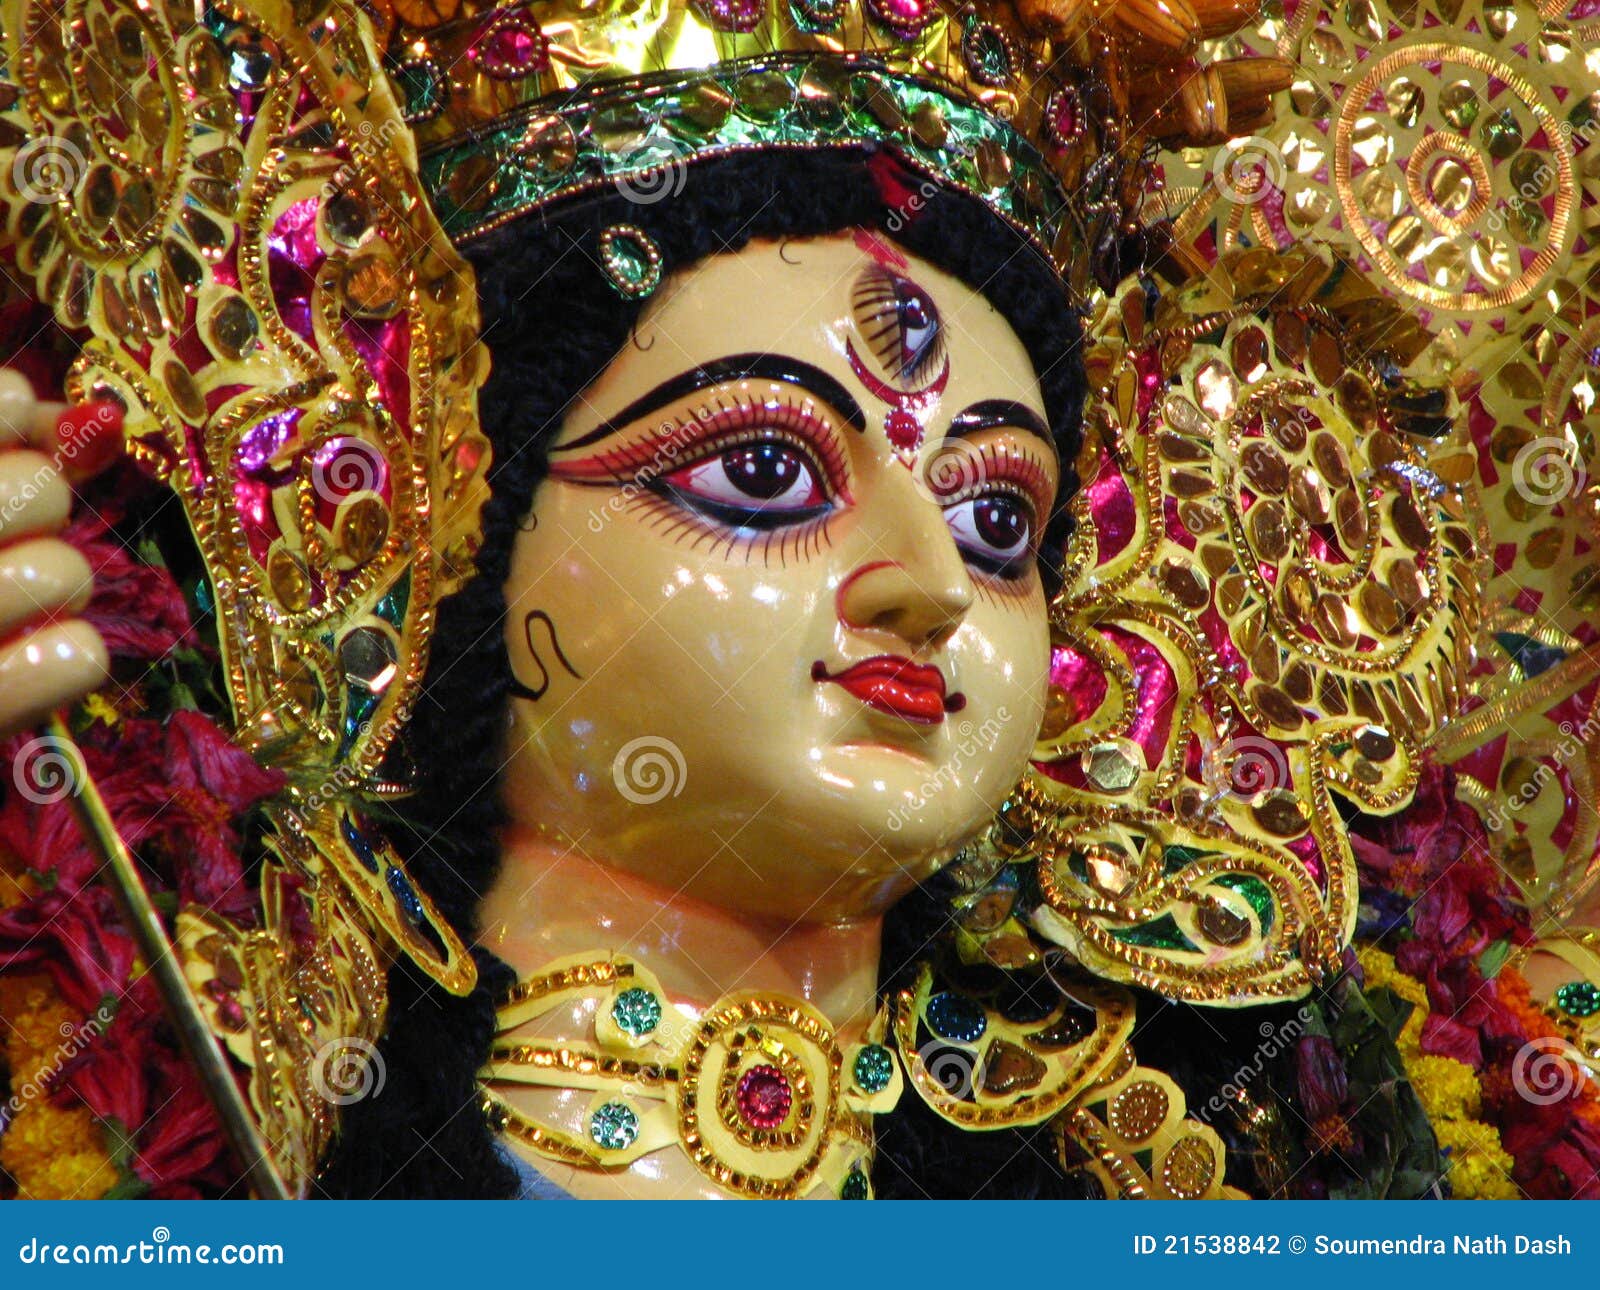 Maa Durga sculpture stock photo. Image of sculpture, hindu - 21538842